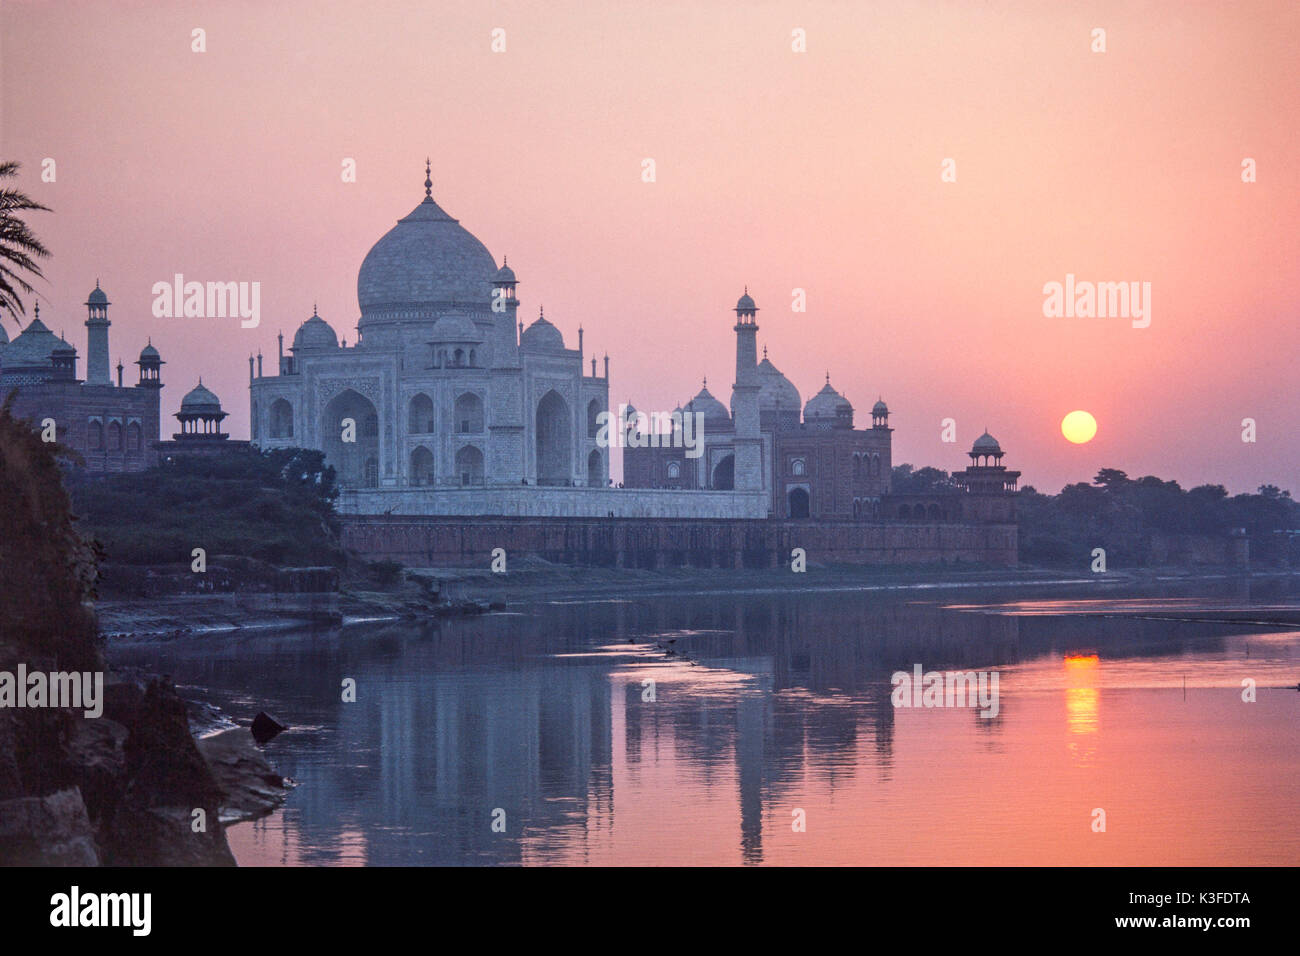 The Taj Mahal at sundown, Agra, India Stock Photo